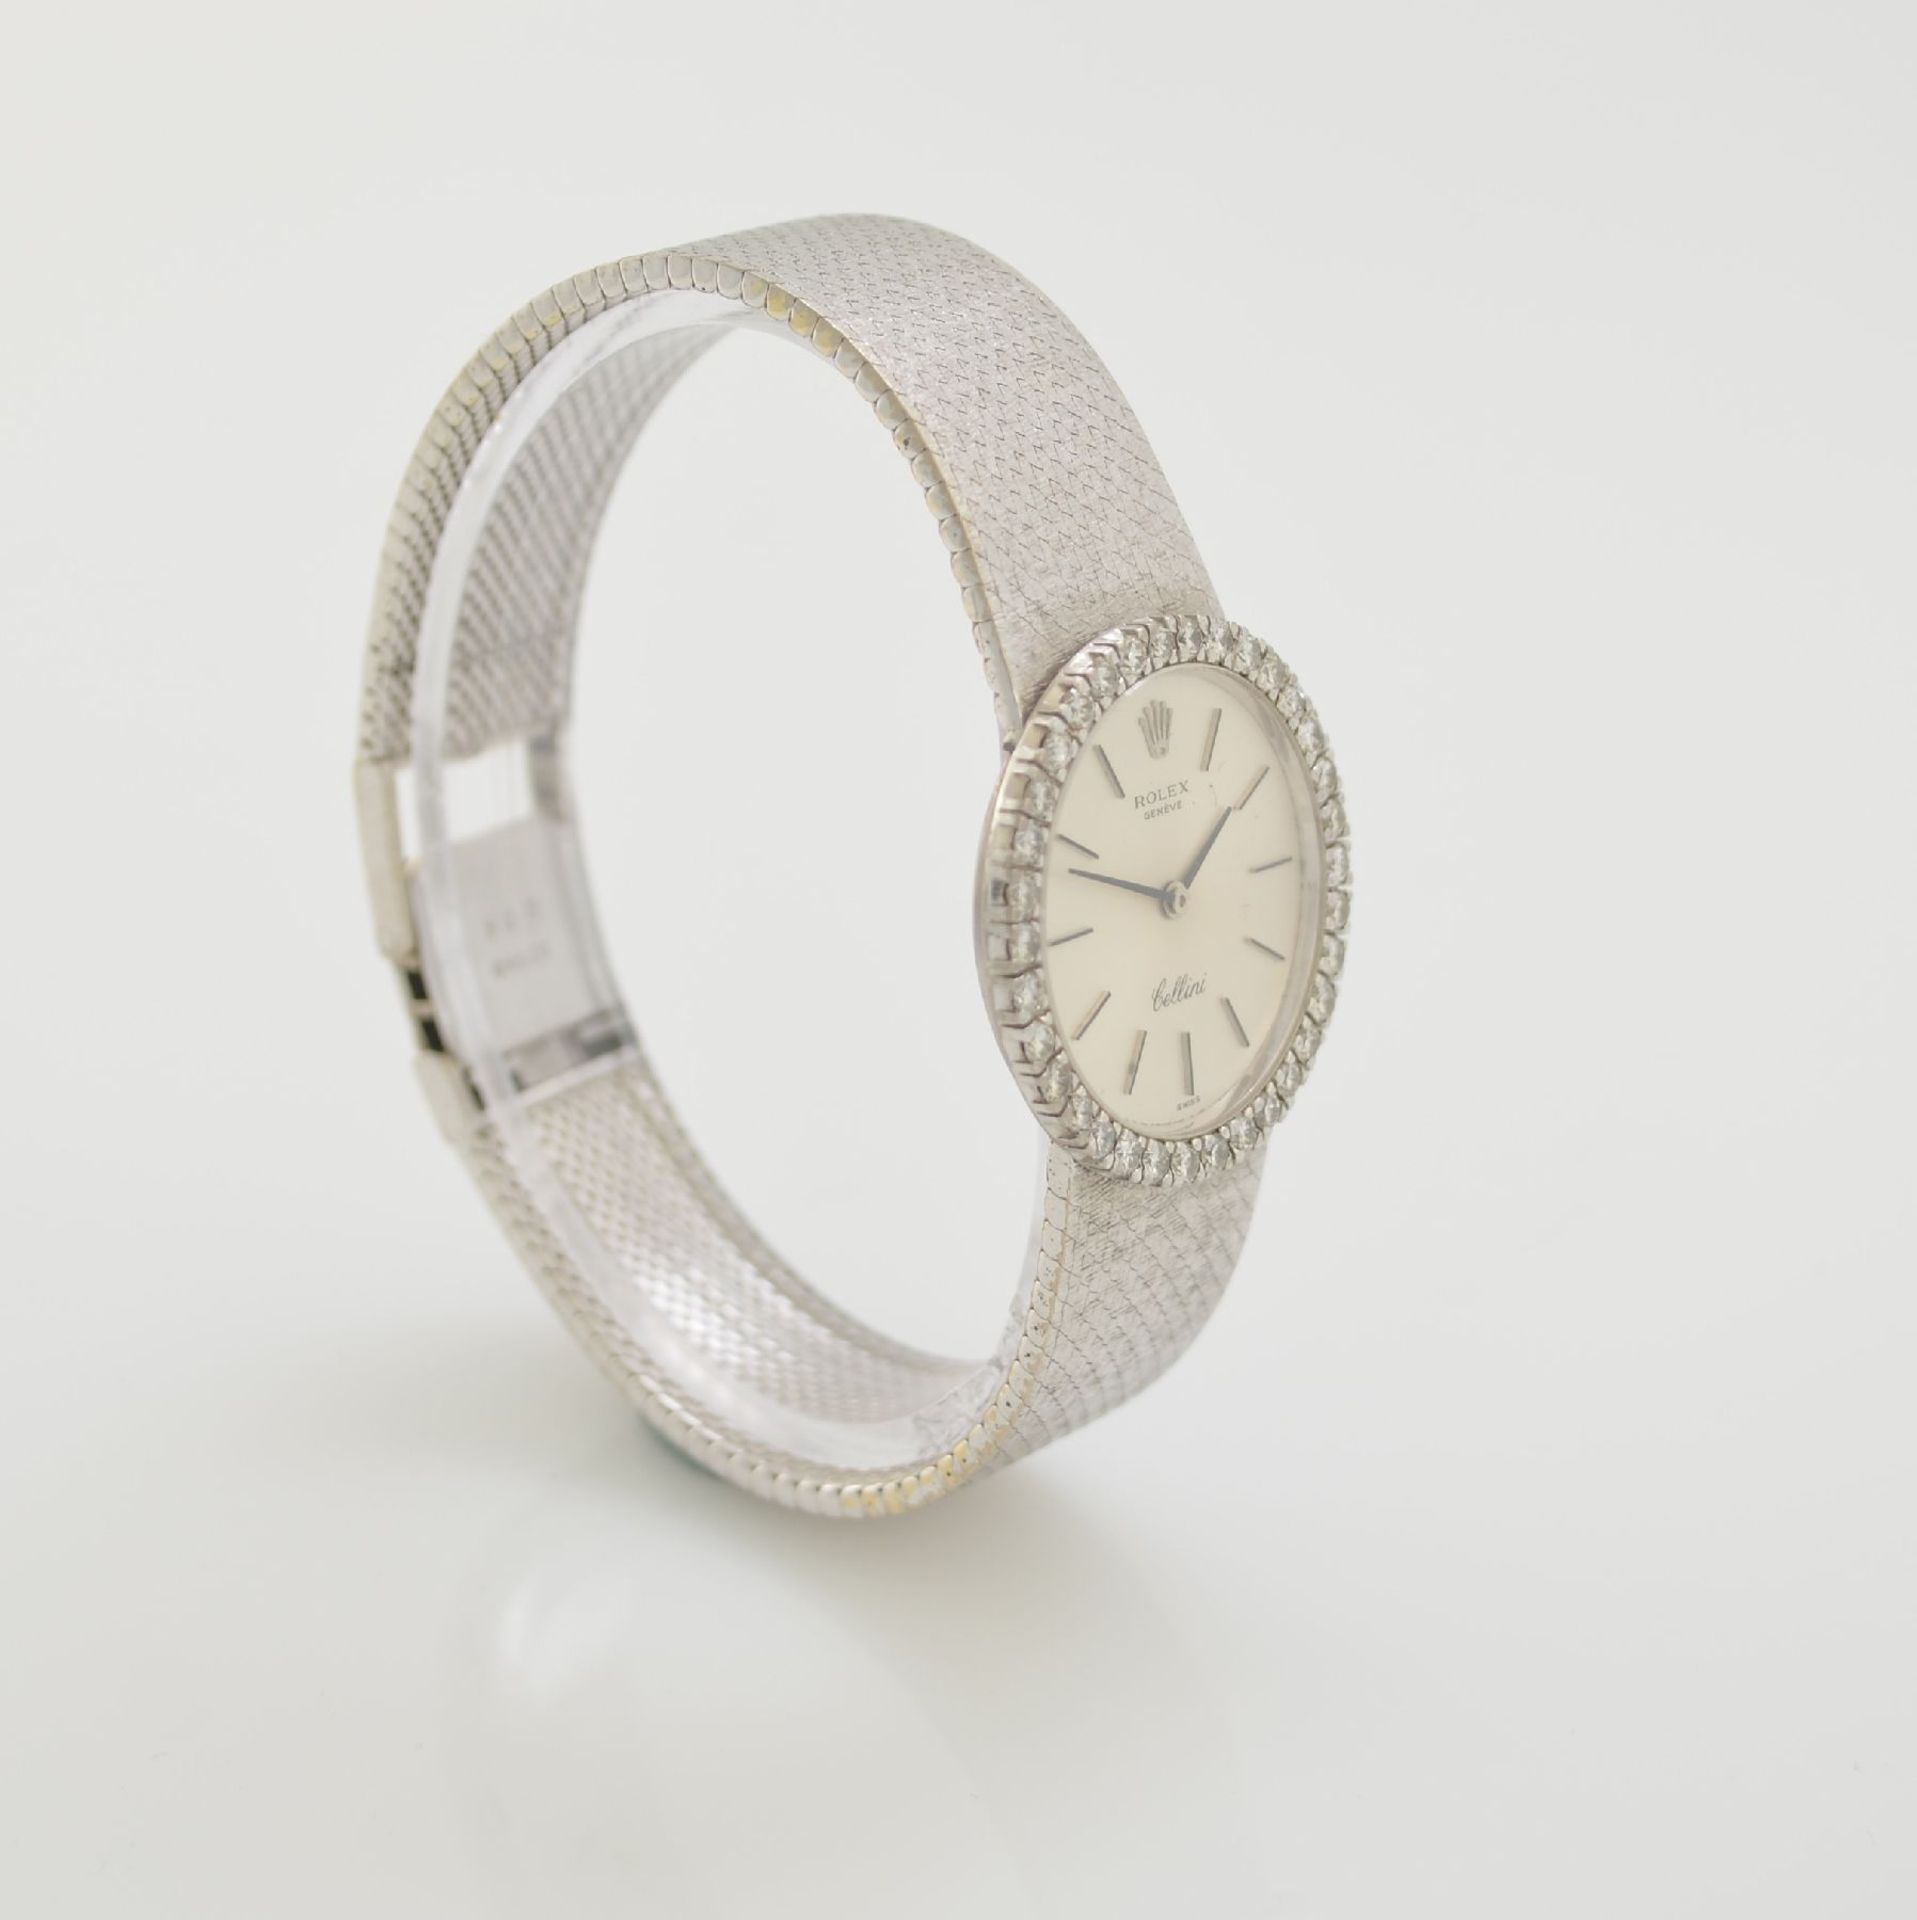 ROLEX Cellini 18k white gold, diamond set ladies wristwatch, Switzerland around 1970, manual - Bild 4 aus 5